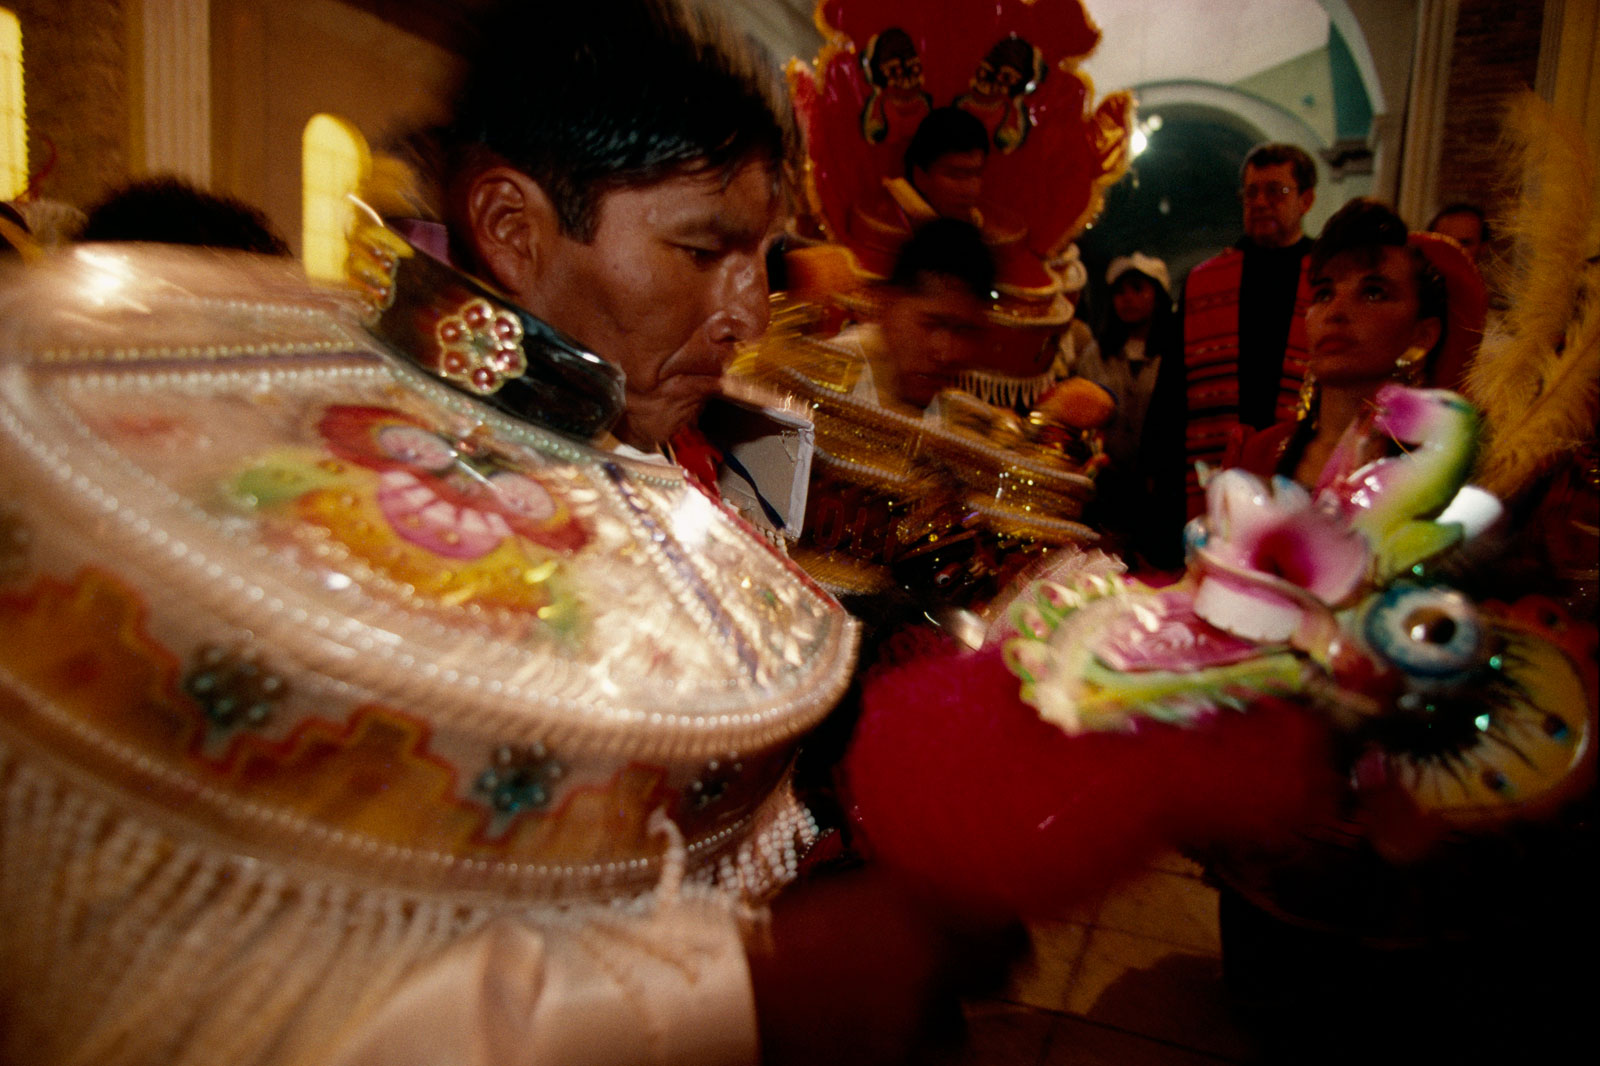 El carnaval de Oruro